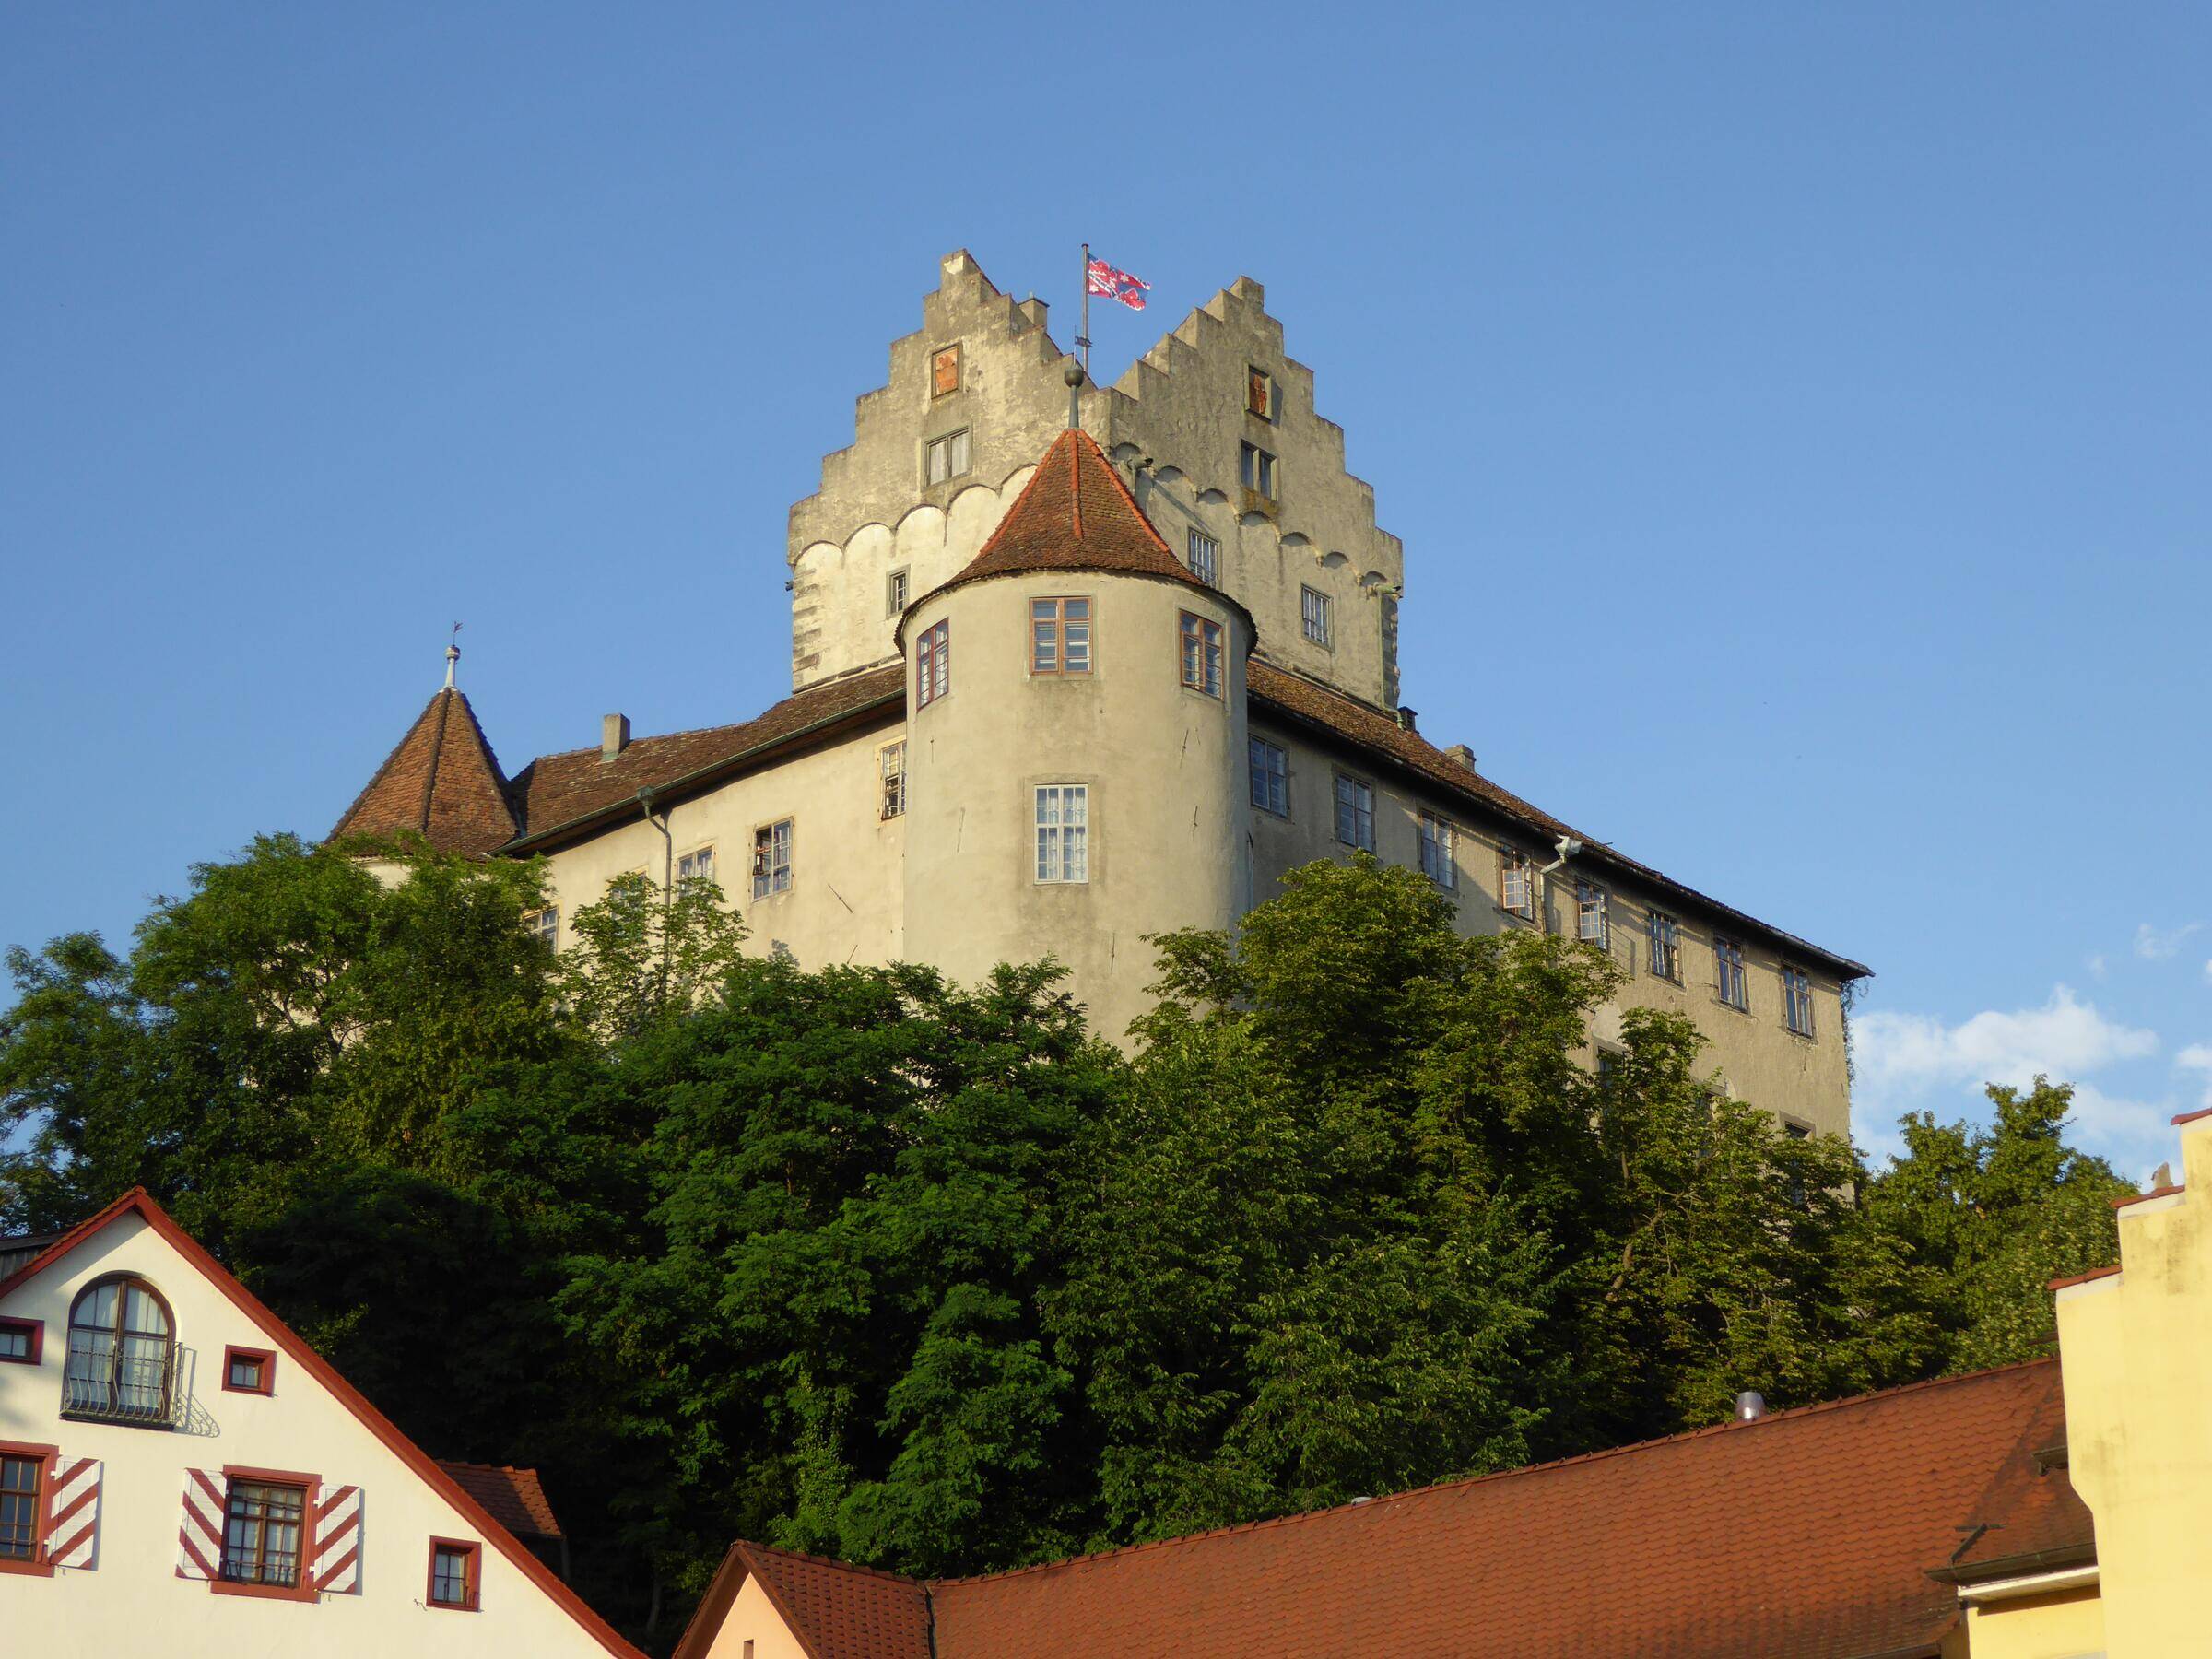 Umgebung - Burg Meersburg